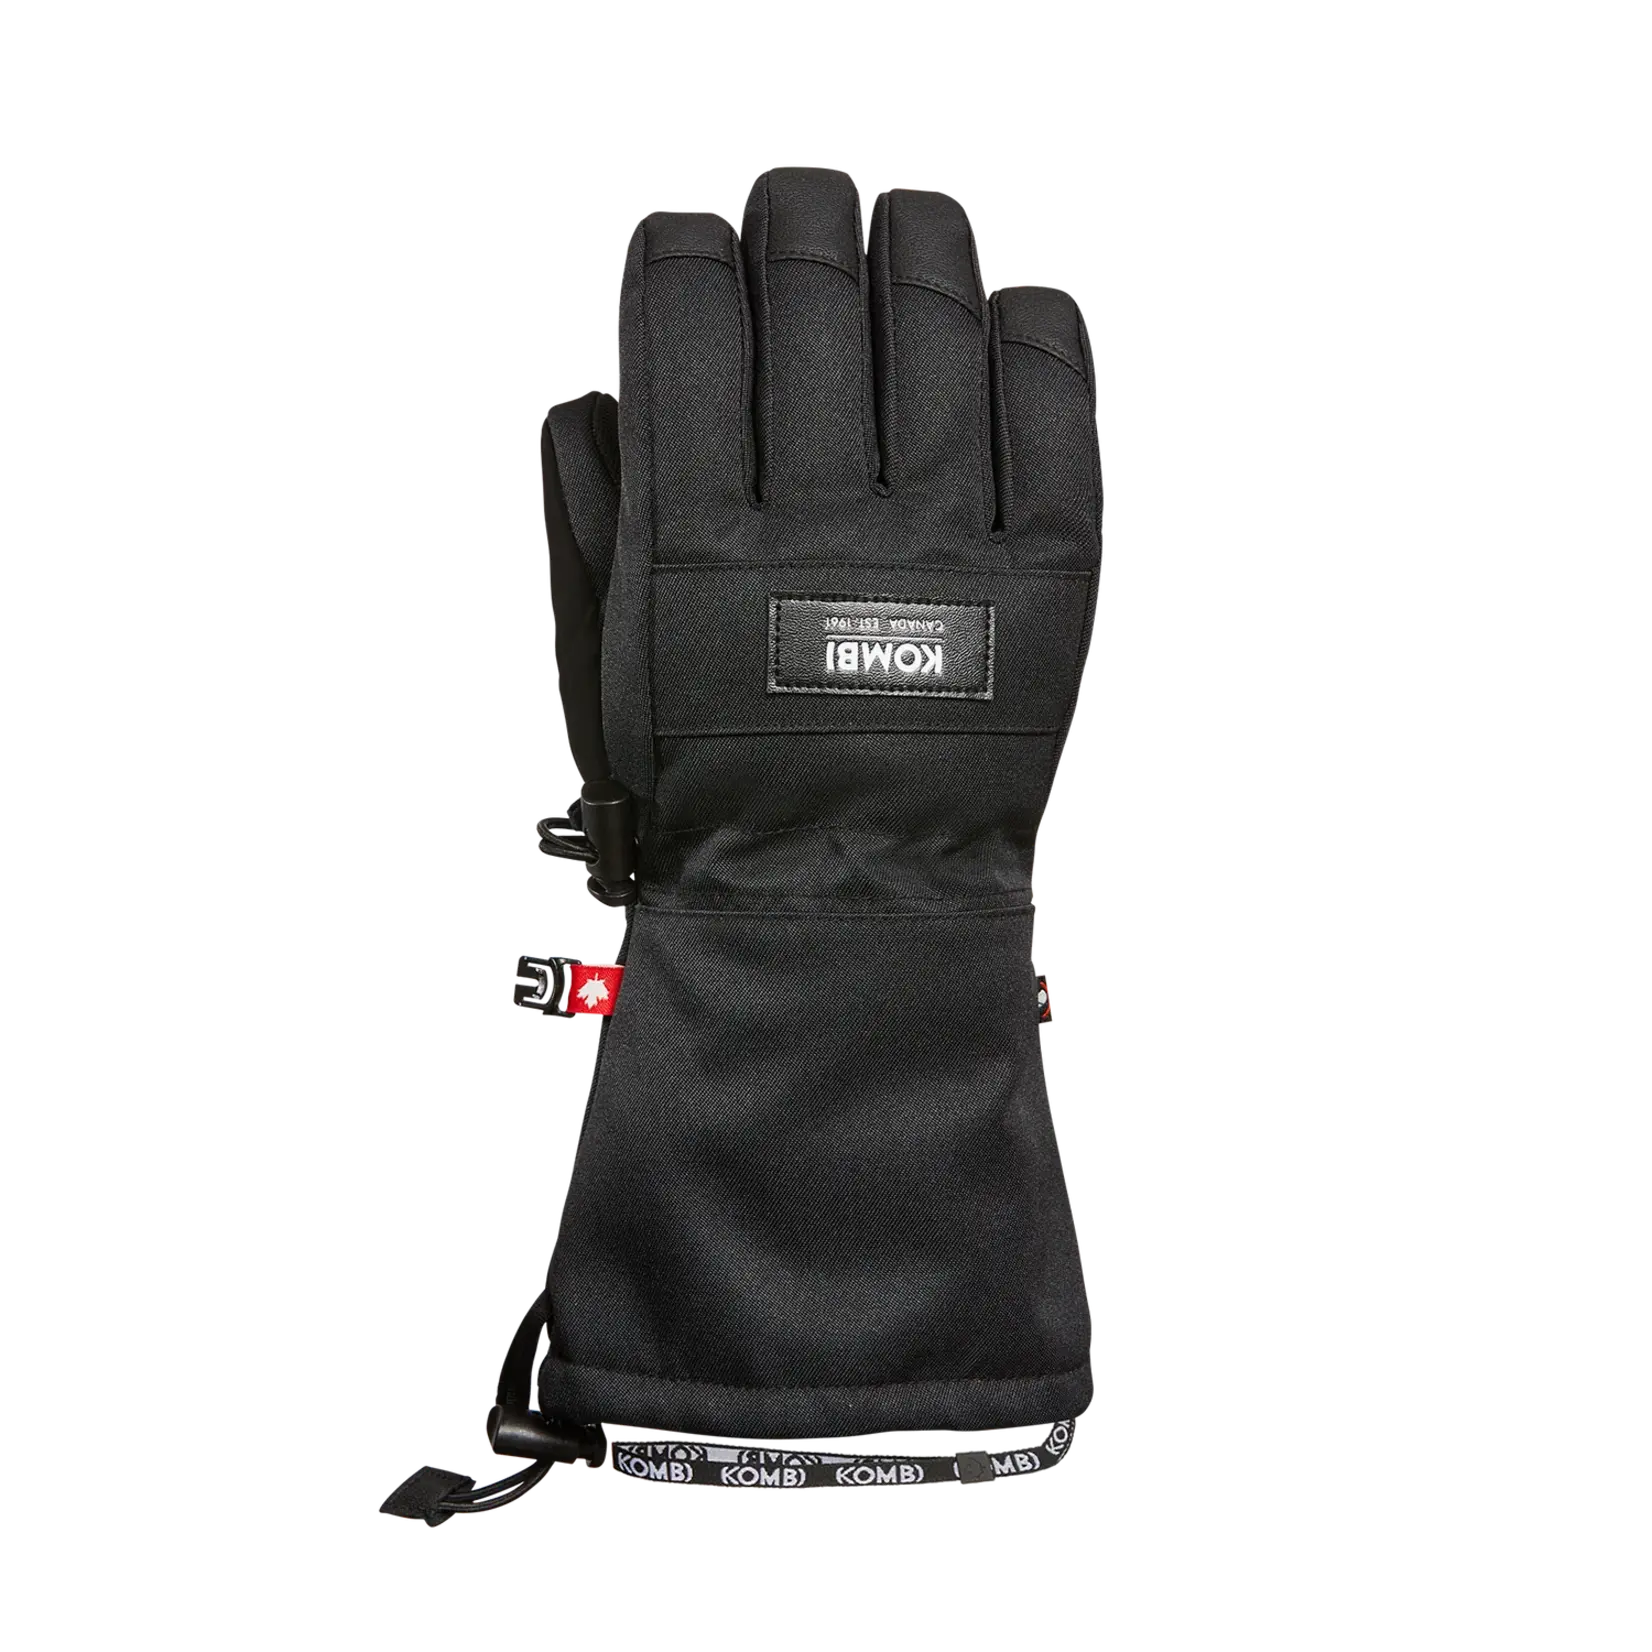 Kombi Downhill Junior Glove, Black